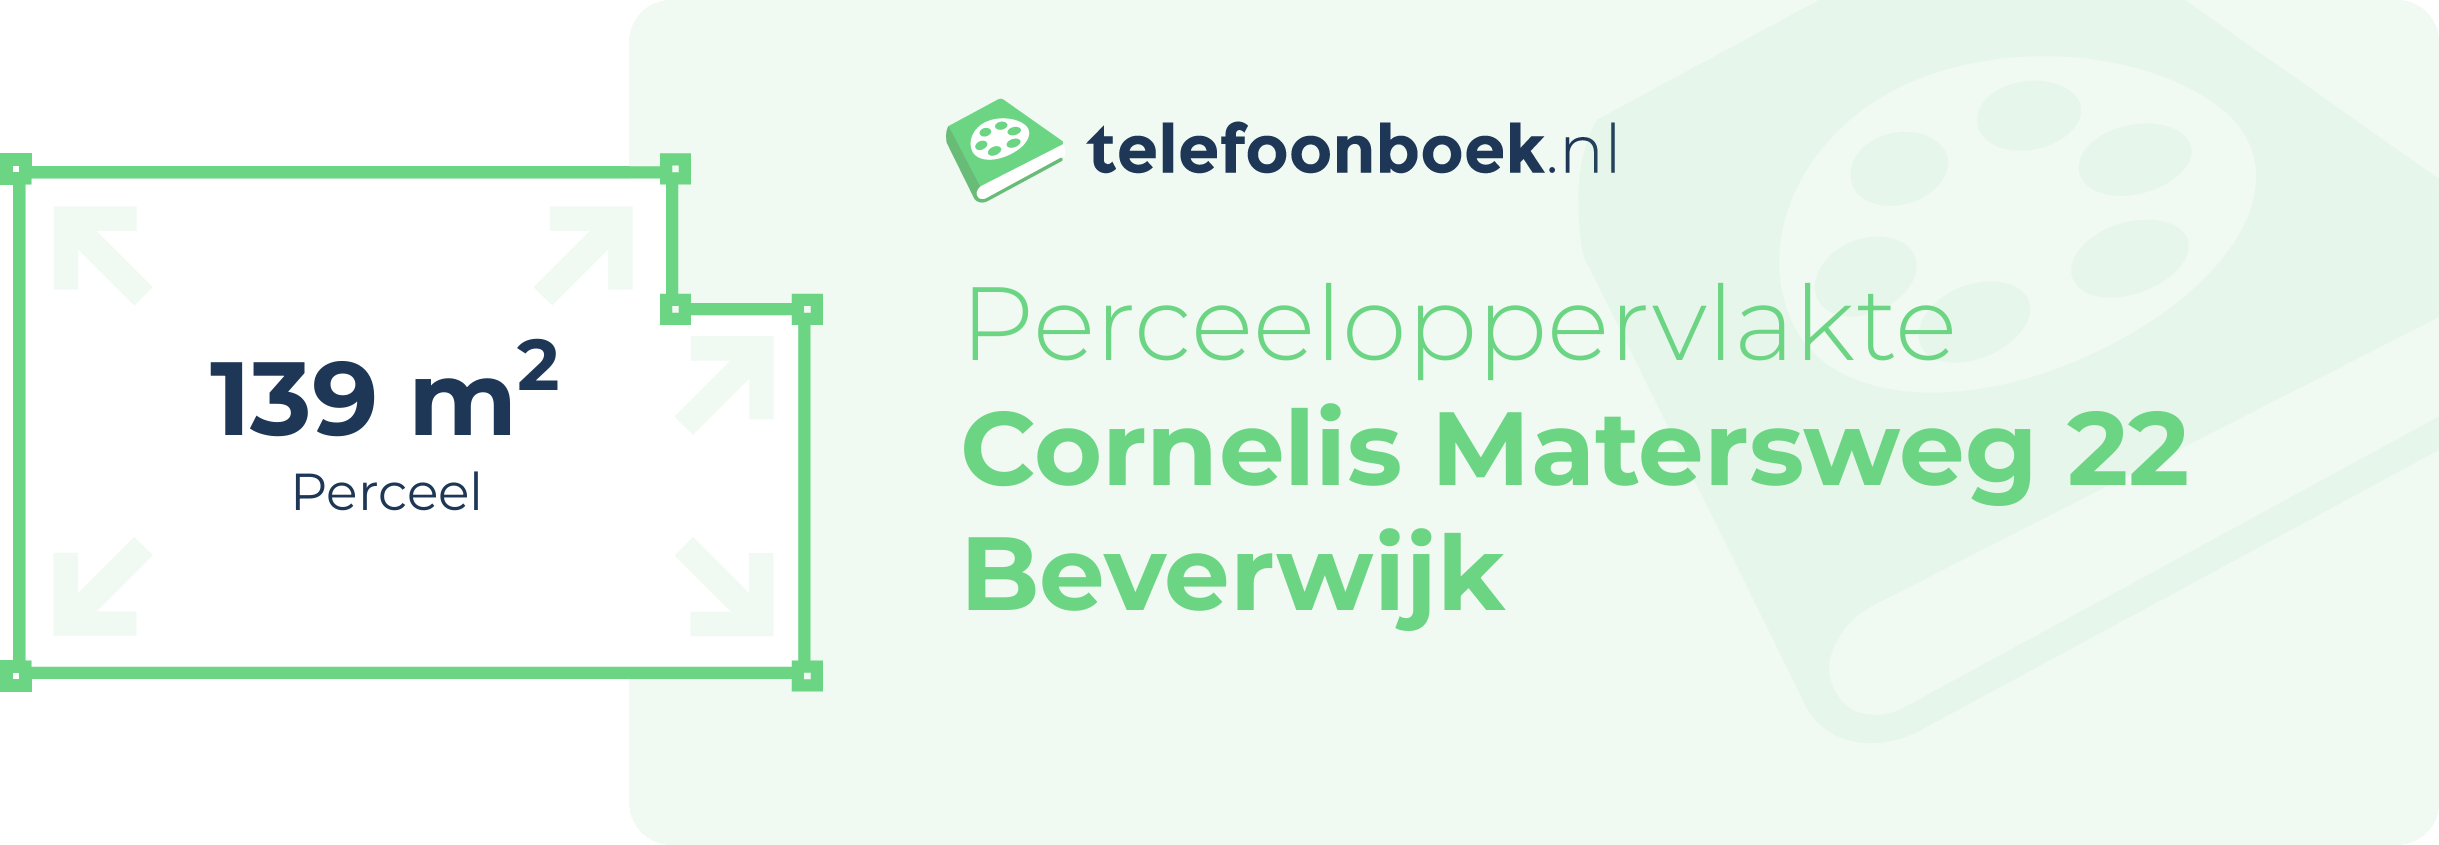 Perceeloppervlakte Cornelis Matersweg 22 Beverwijk